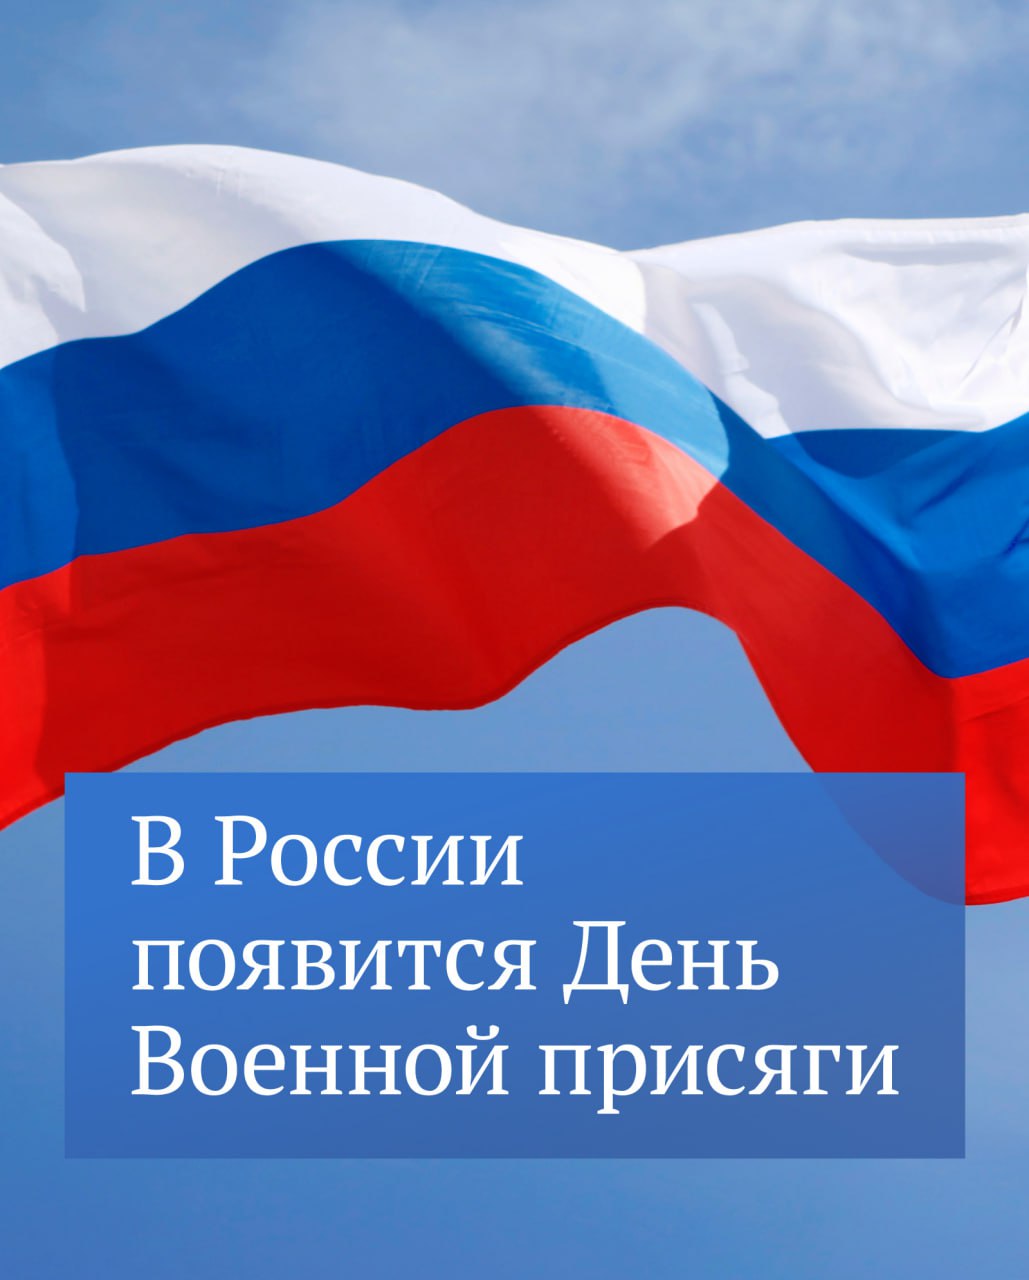 День военной присяги будут отмечать в России 21 ноября